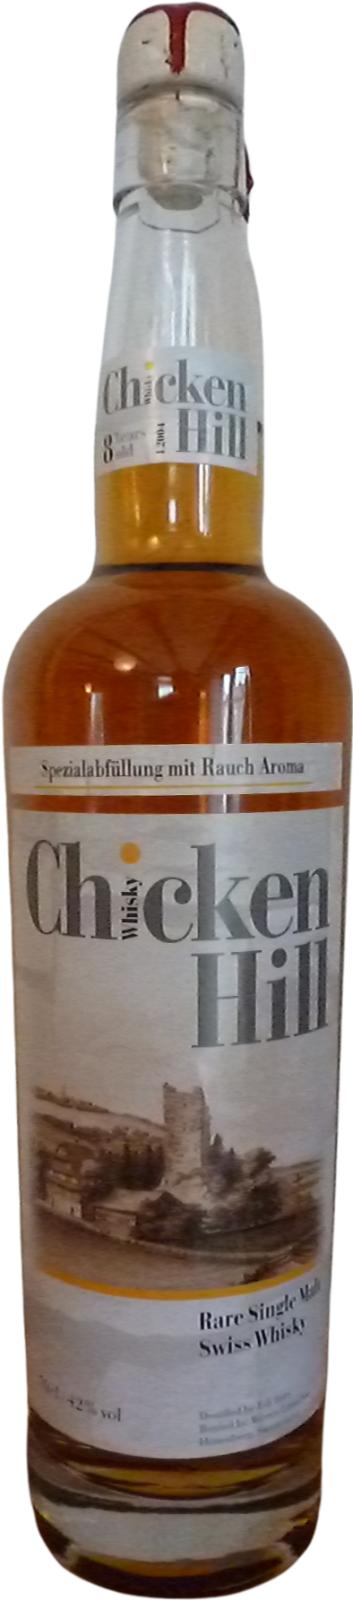 Chicken Hill 2004 Spezialabfullung Rauch Aroma 42% 700ml